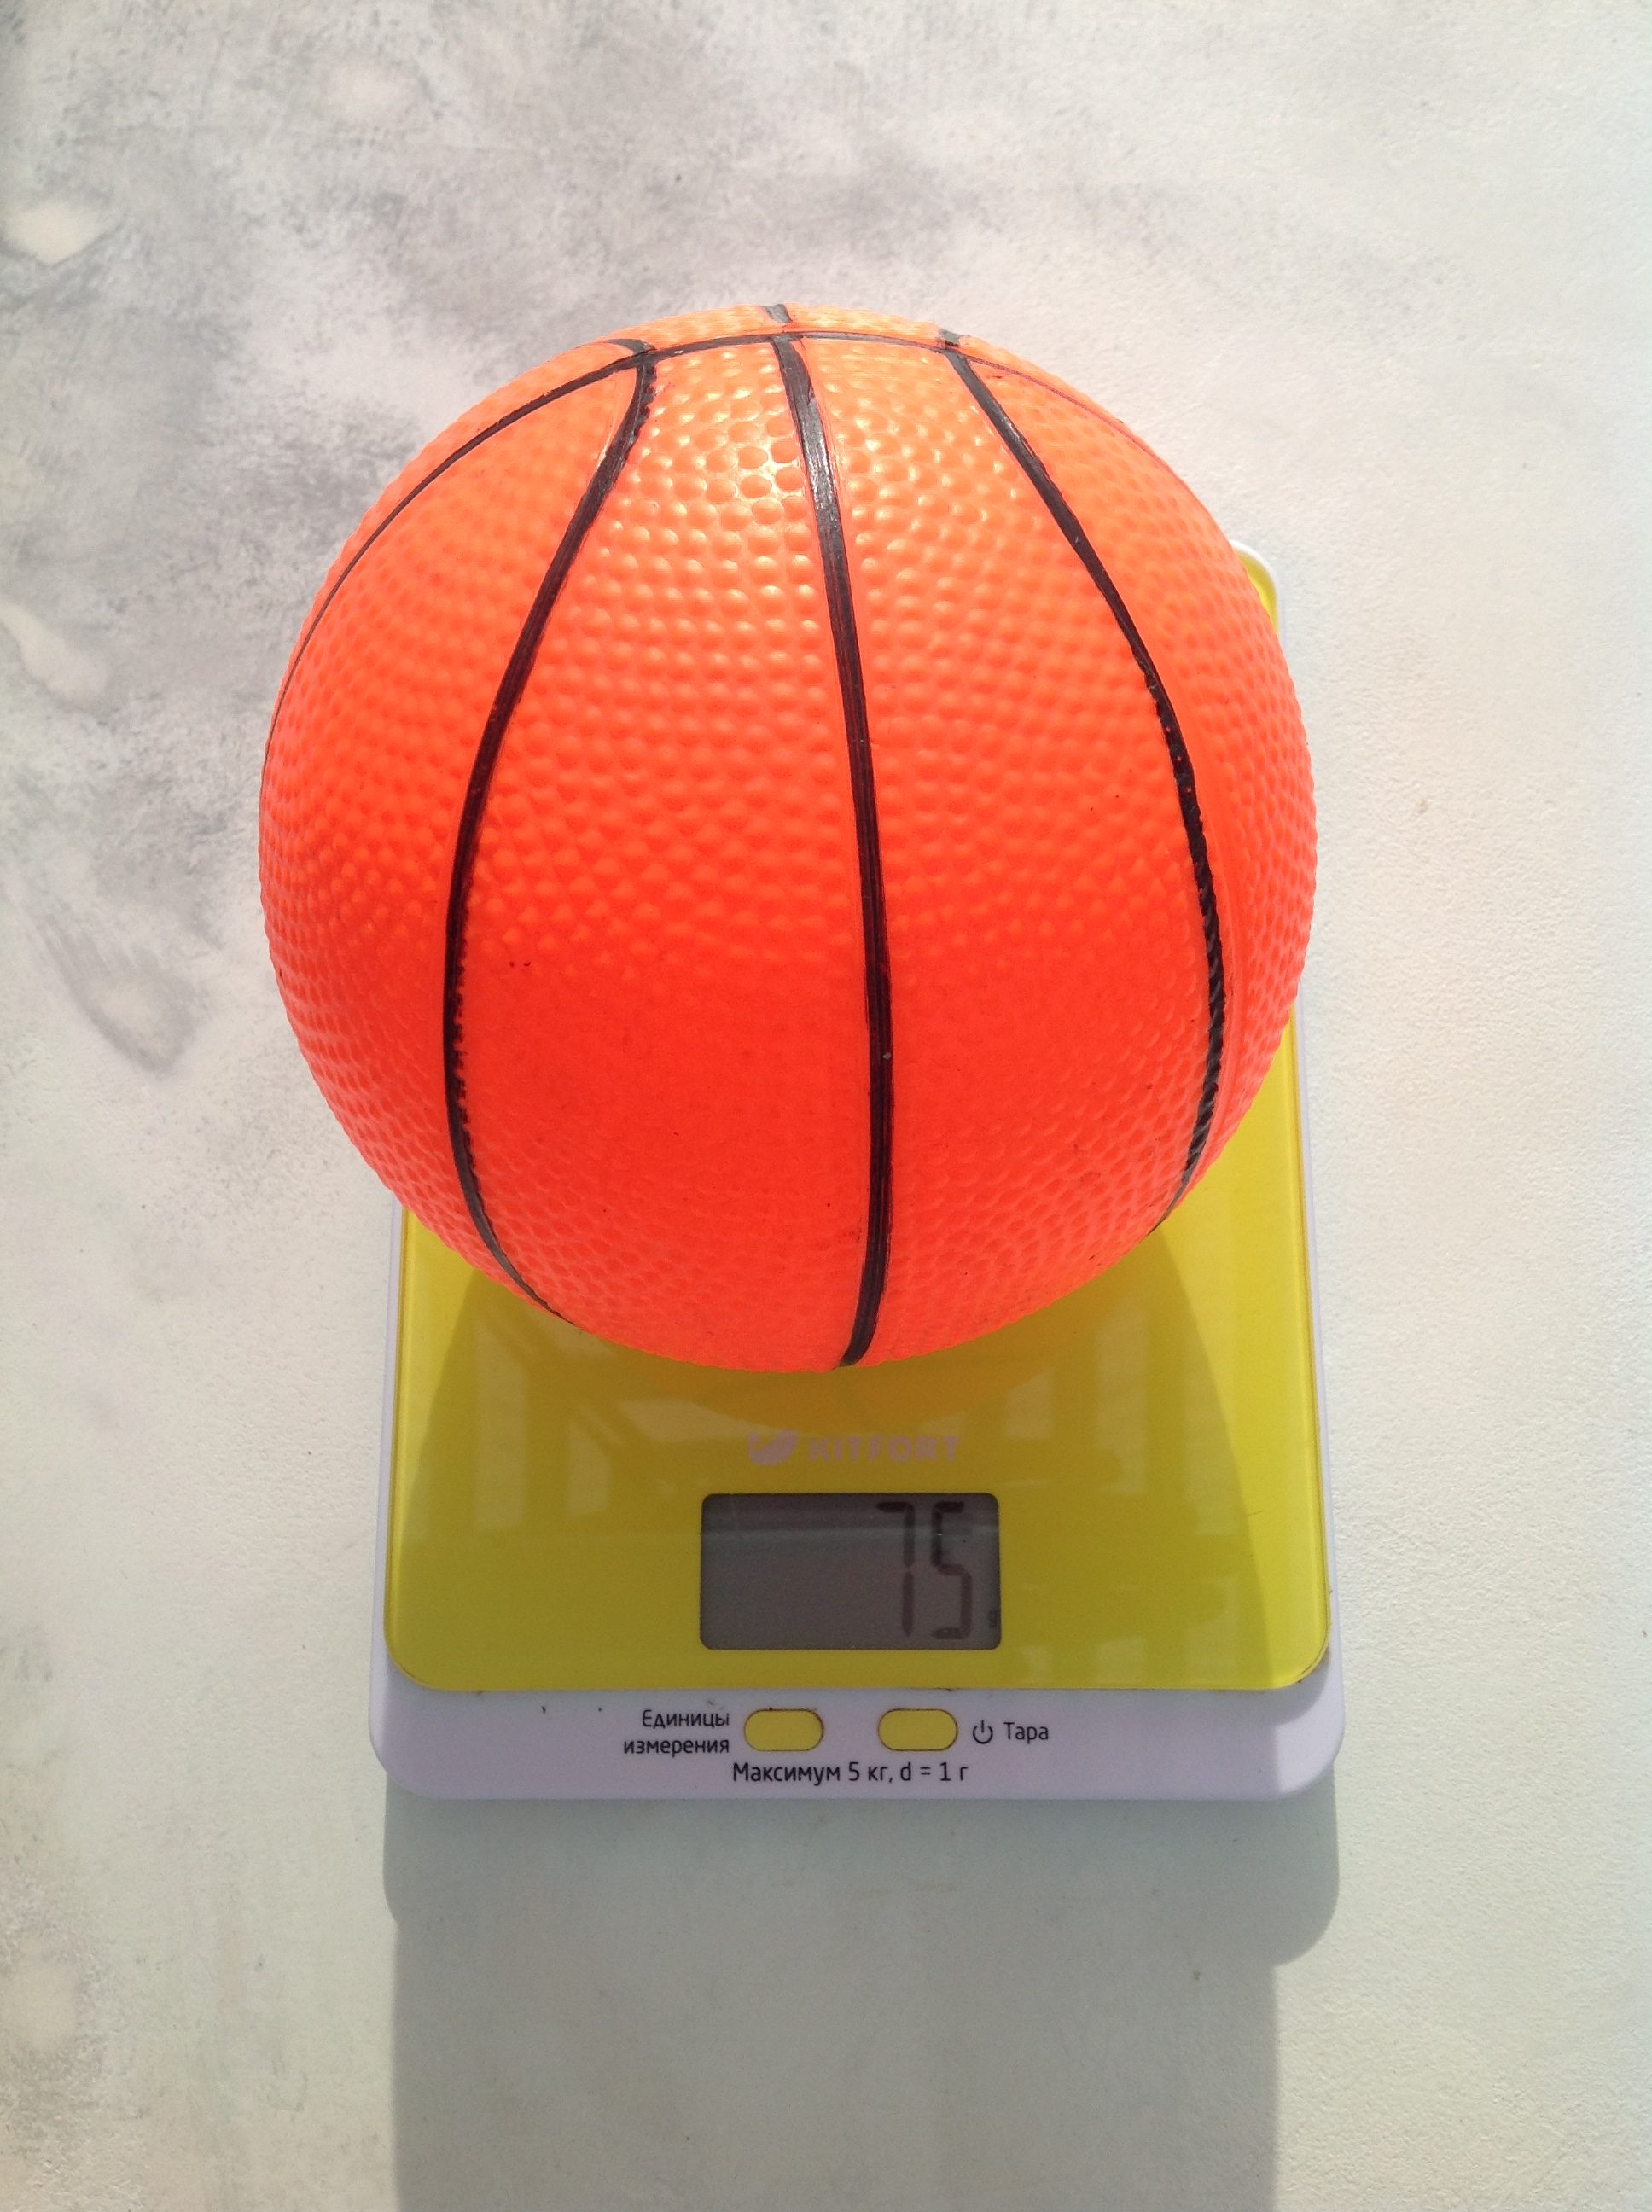 Bir çocuk basketbol topunun ağırlığı ne kadardır?